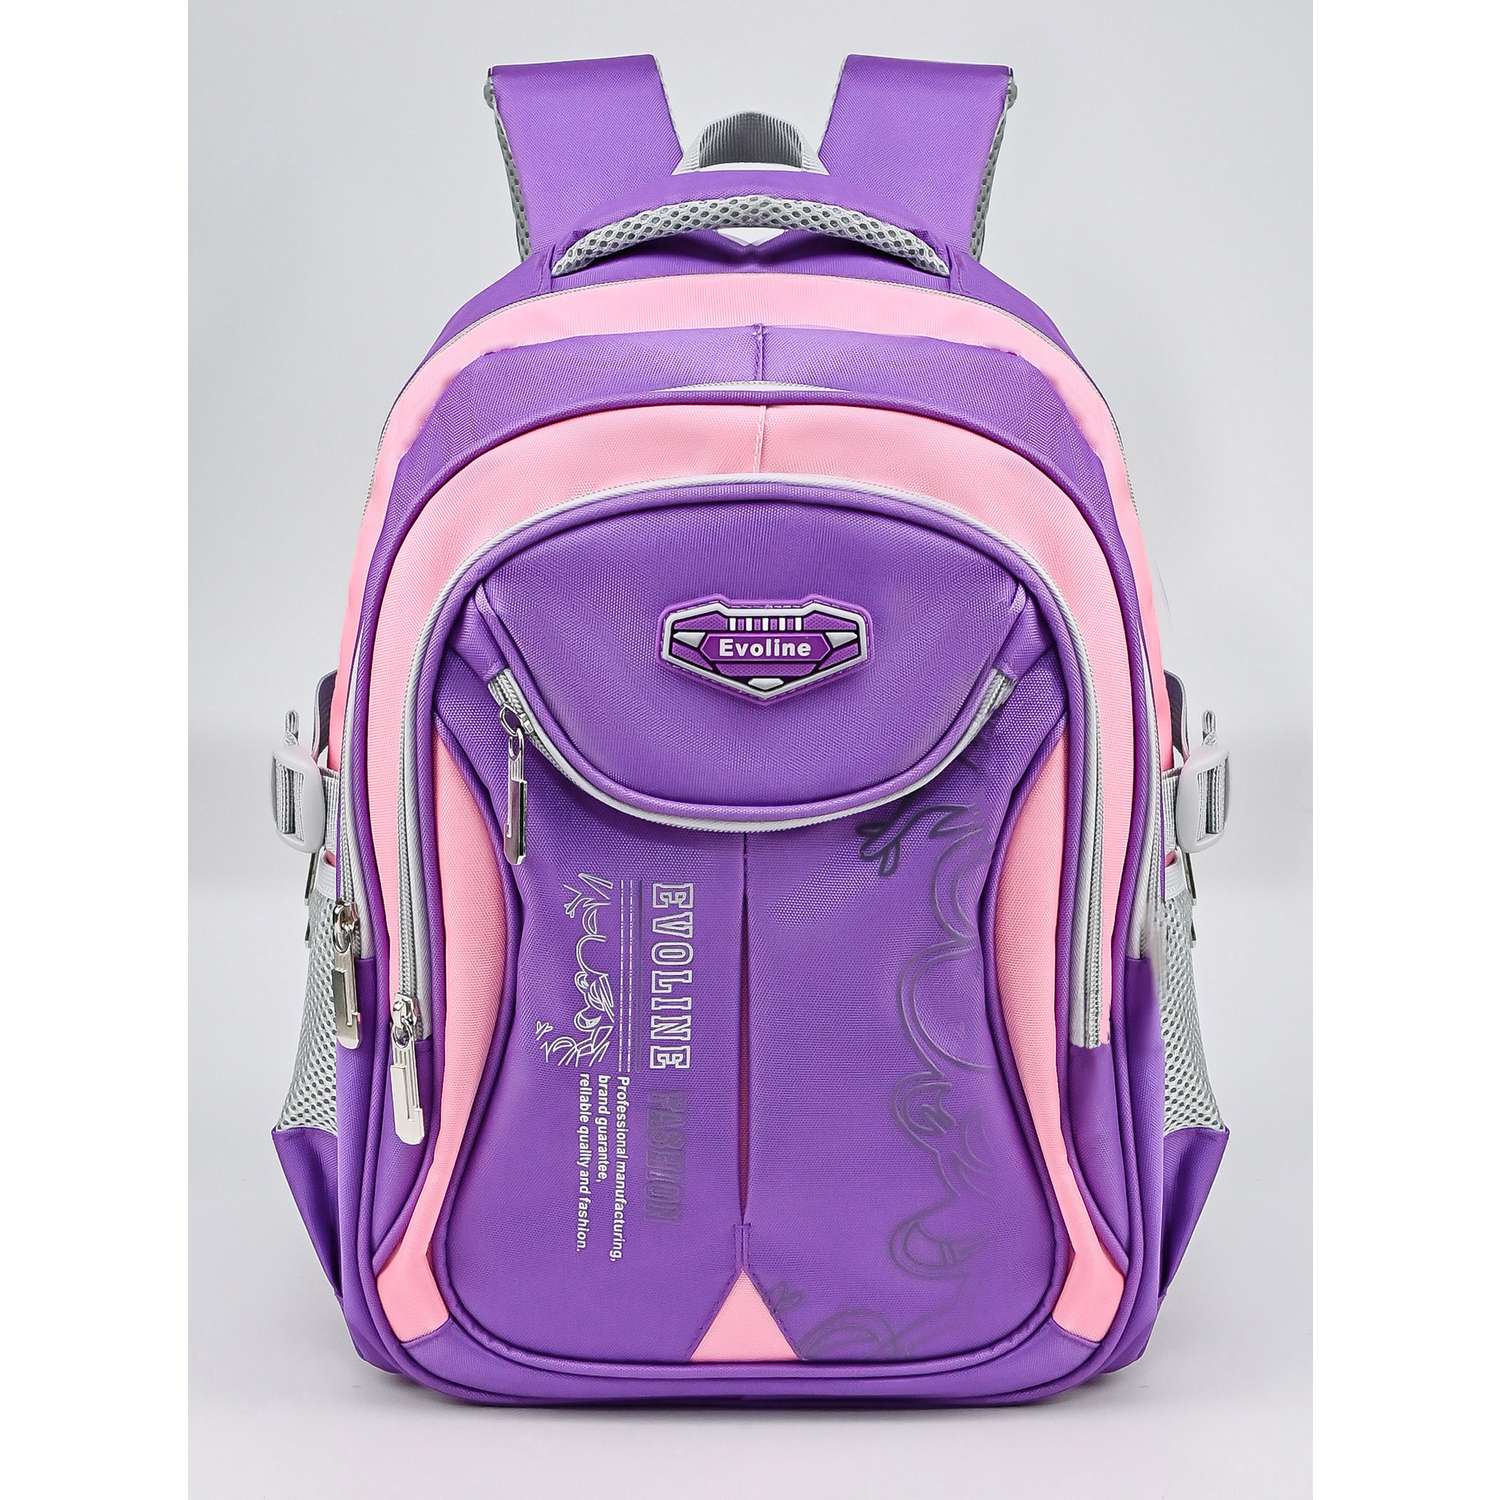 Рюкзак школьный Evoline большой сиреневый розовый EVOS-316 - фото 1